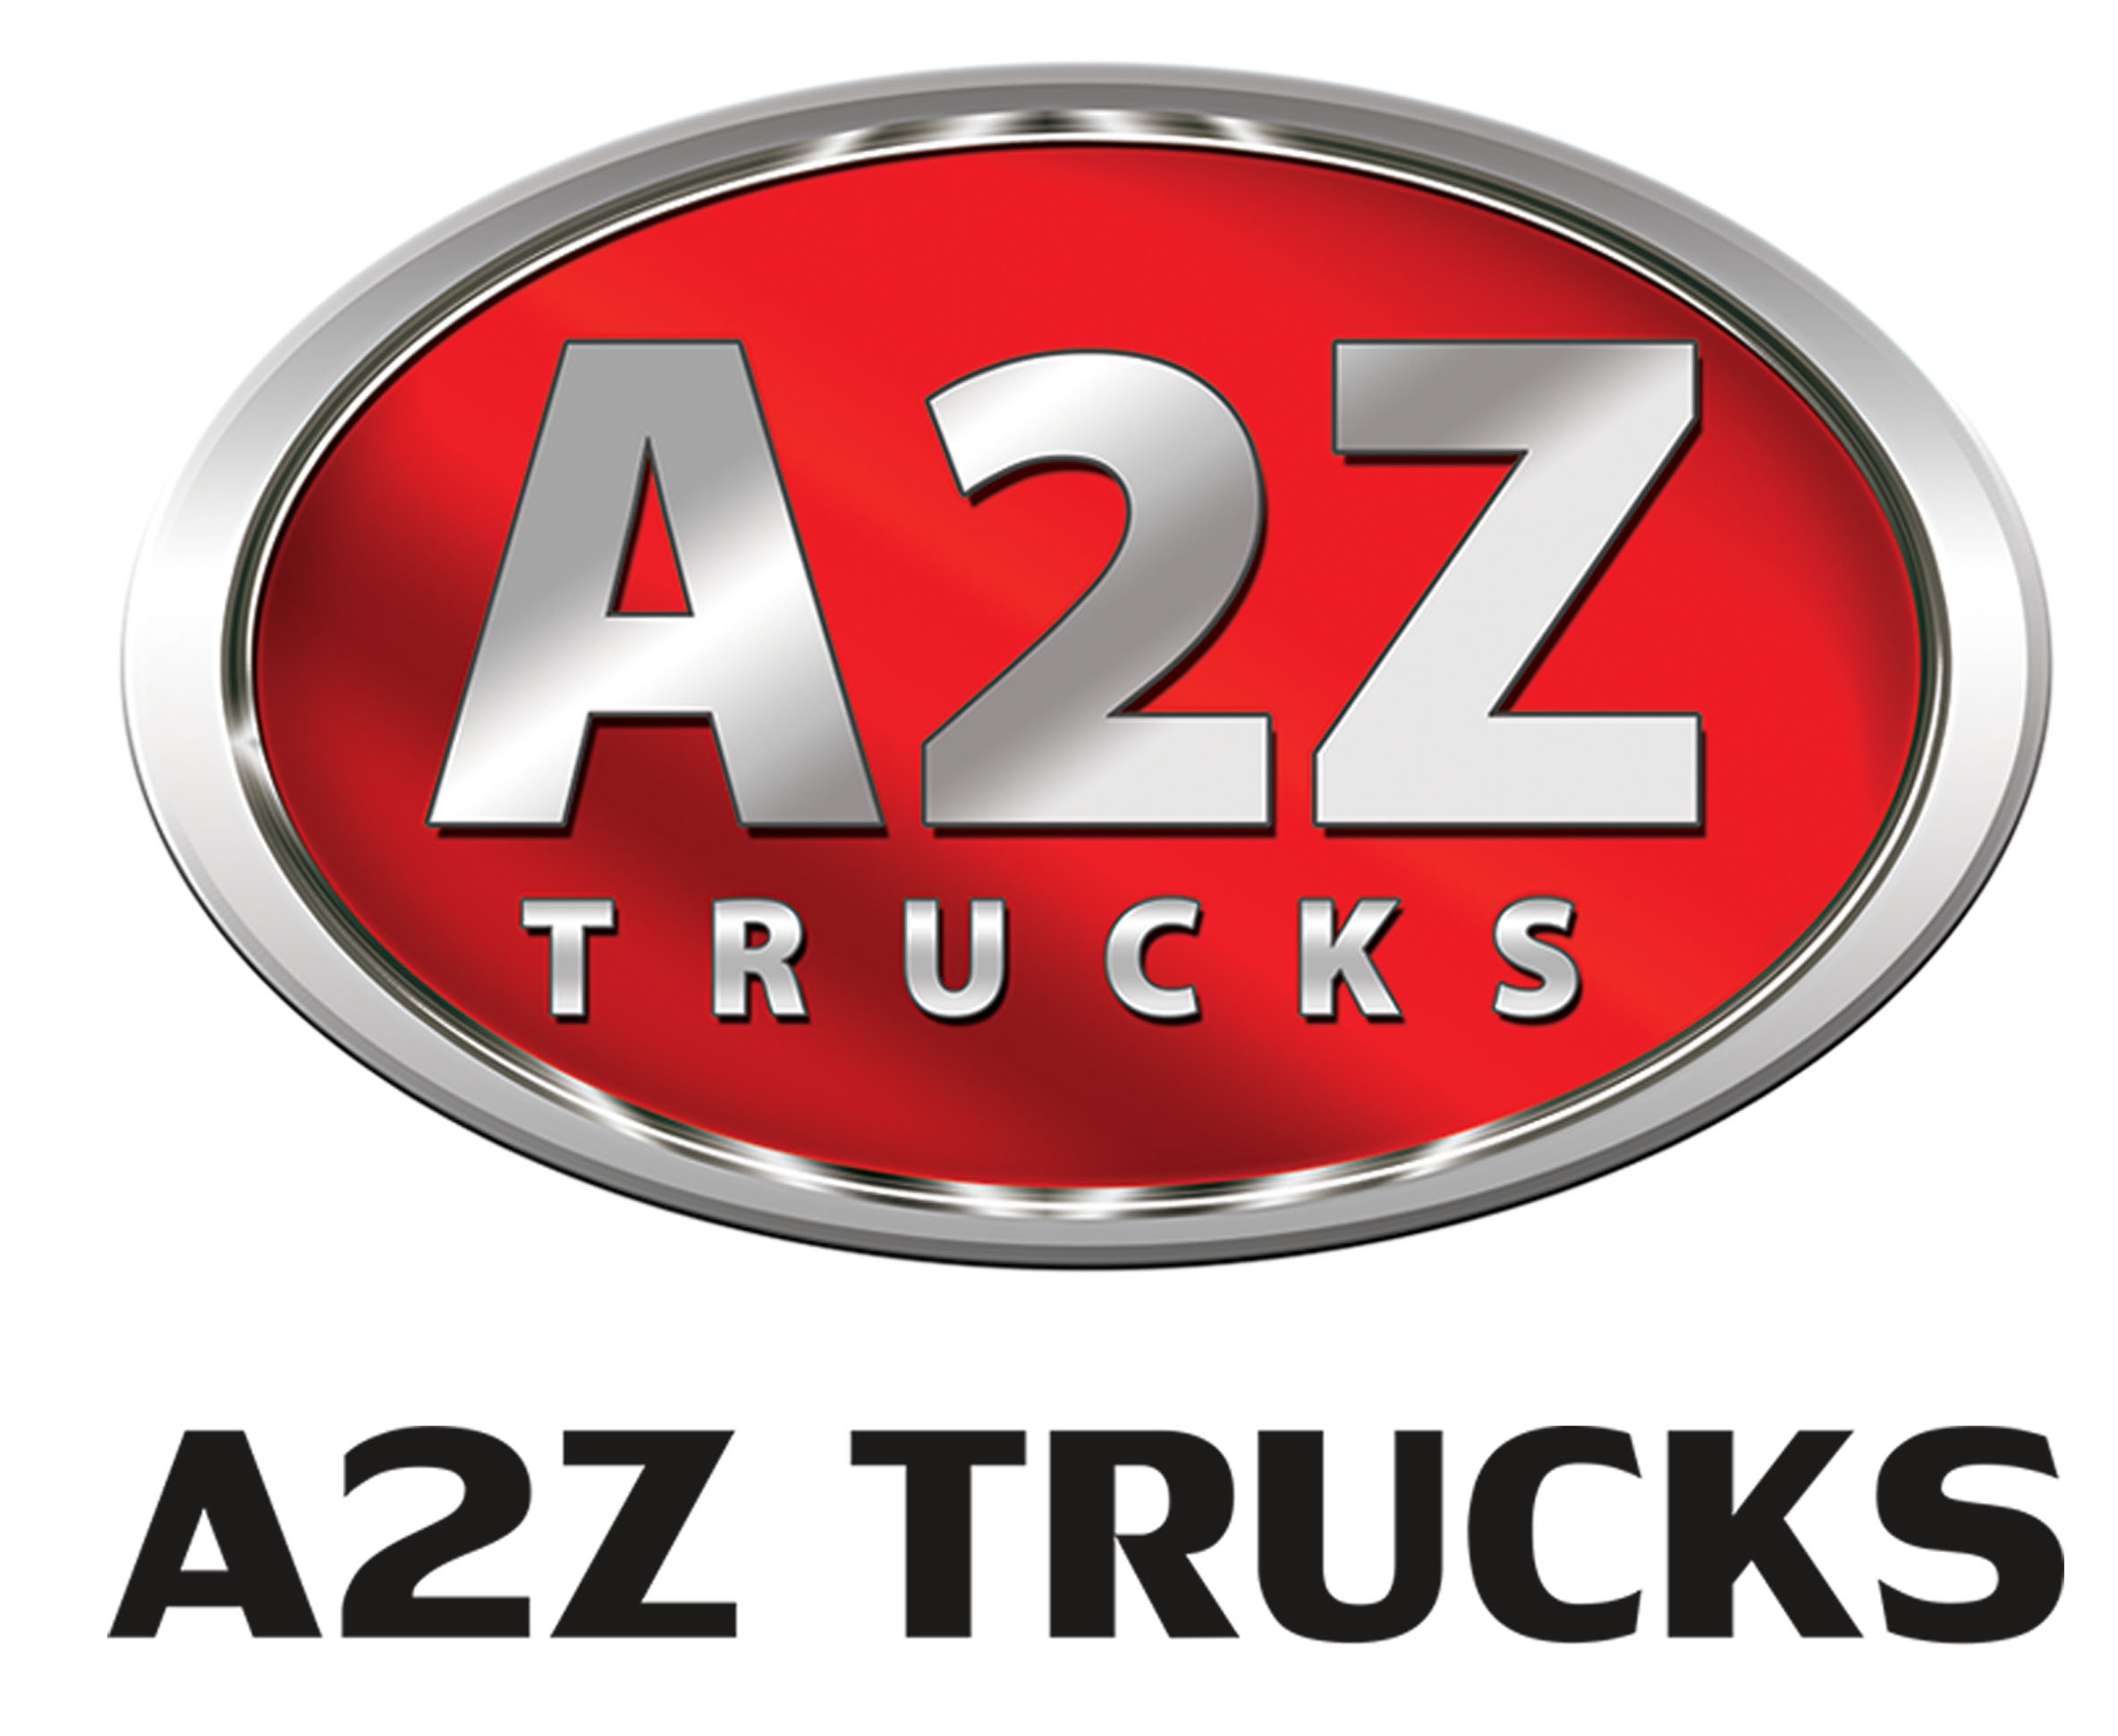 A2Z Trucks - a commercial truck dealer on AgriMag Marketplace